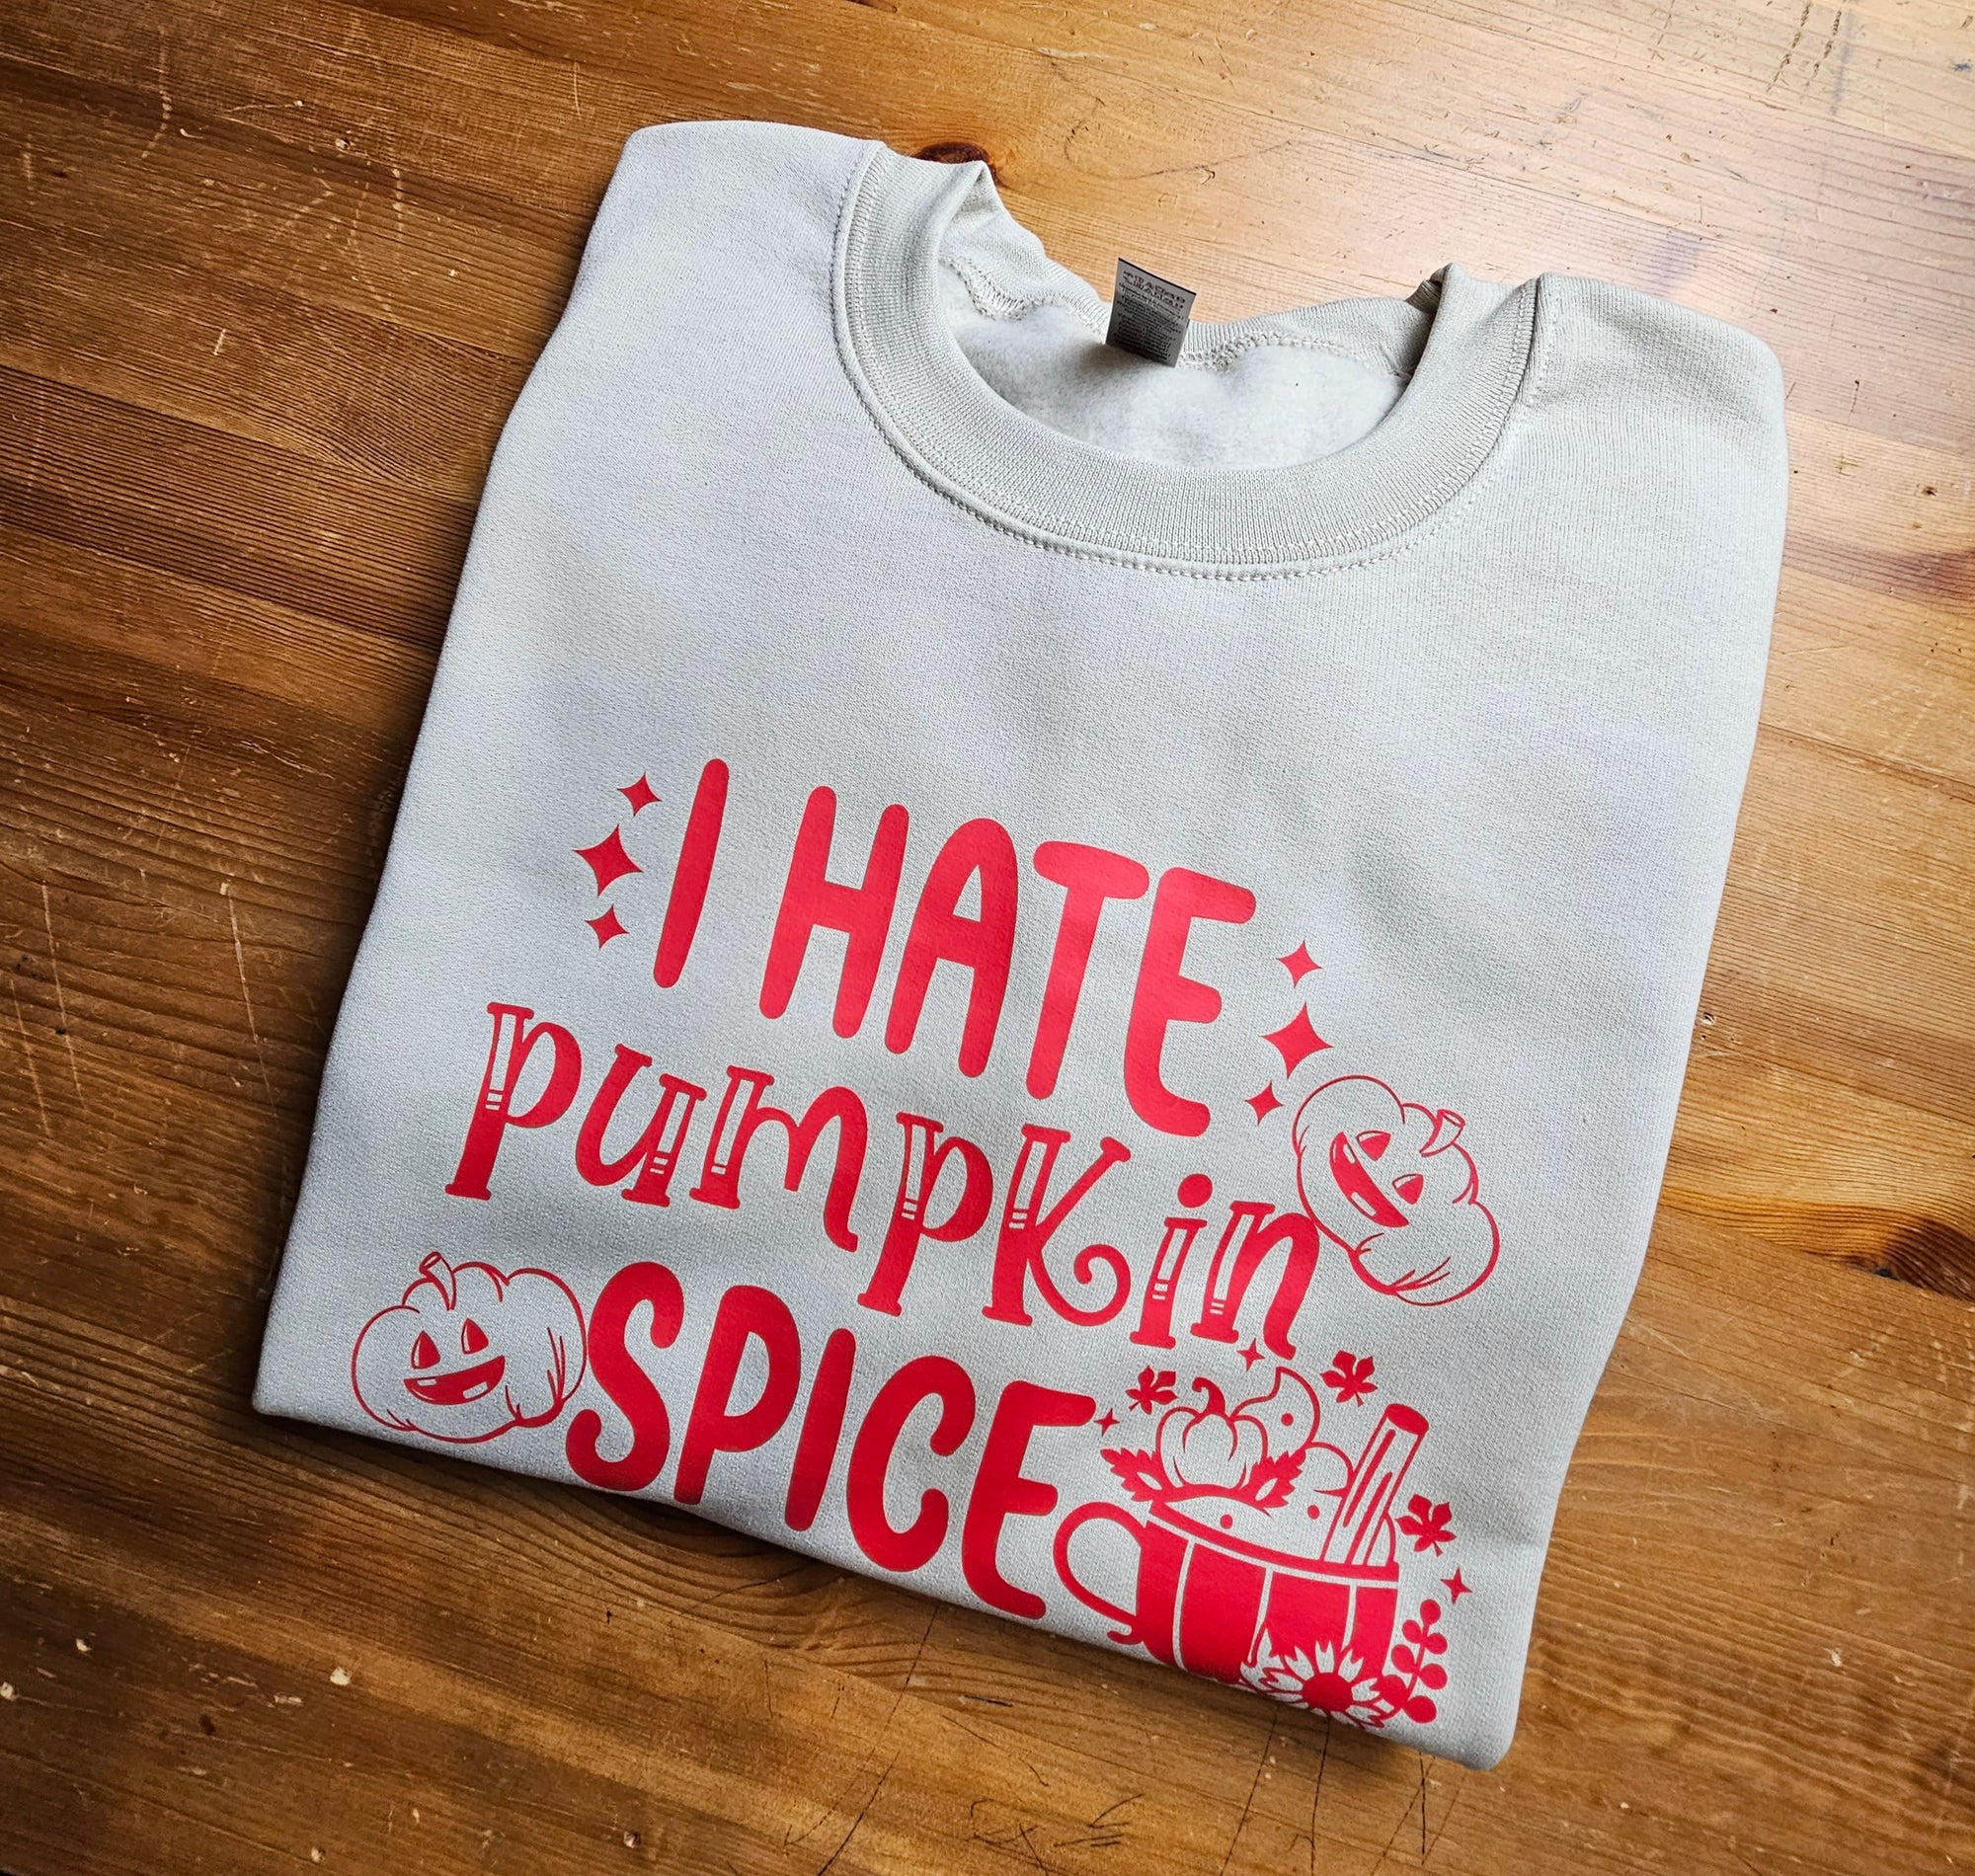 I hate pumpkin spice sweater